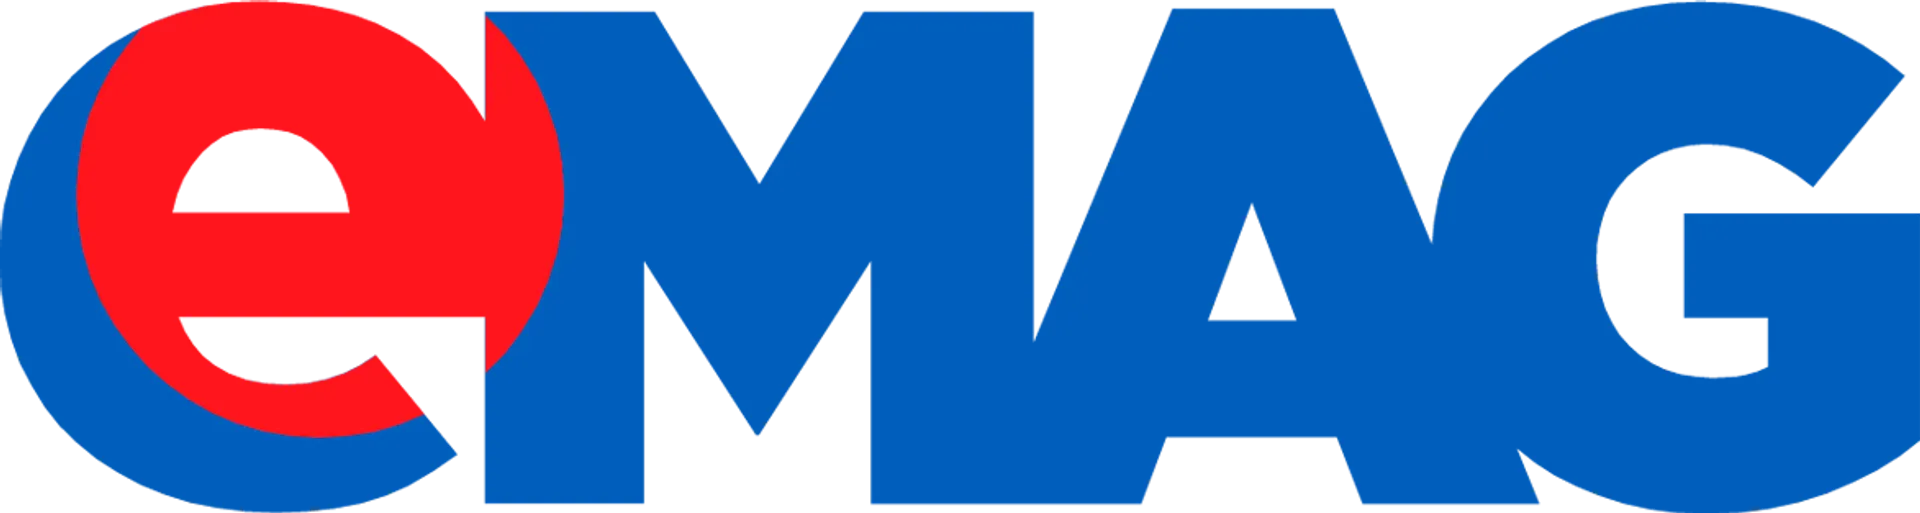 EMAG logo